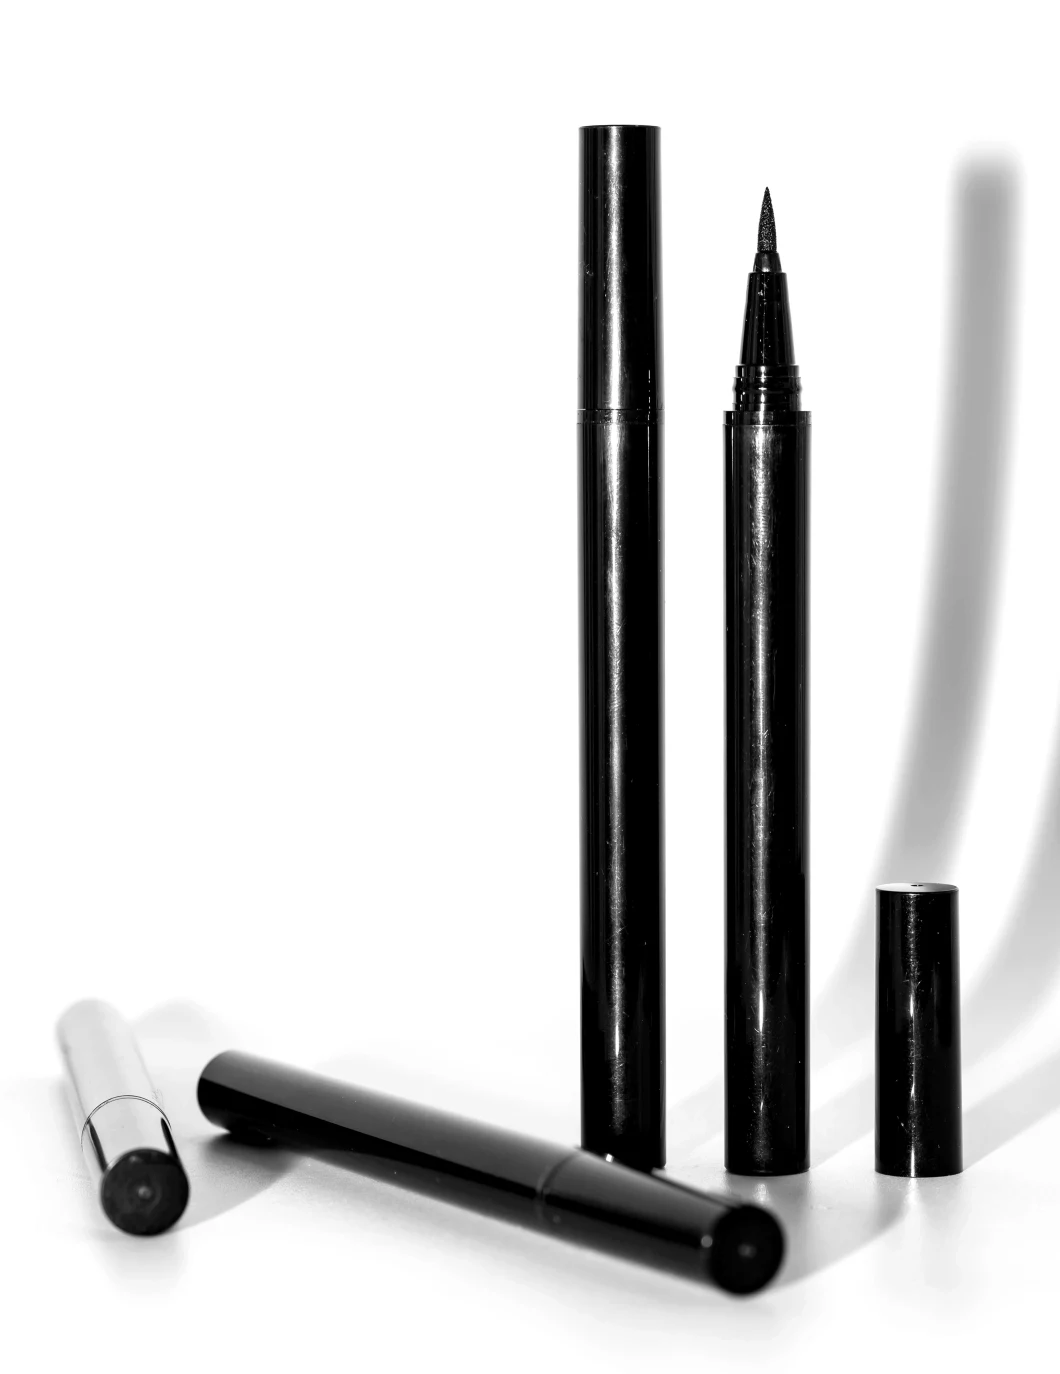 New Product Professional Magical Eyeliner Glue Eyeliner Adhesive for Strip Eyelashes Adhesive Eyeliner Pencil